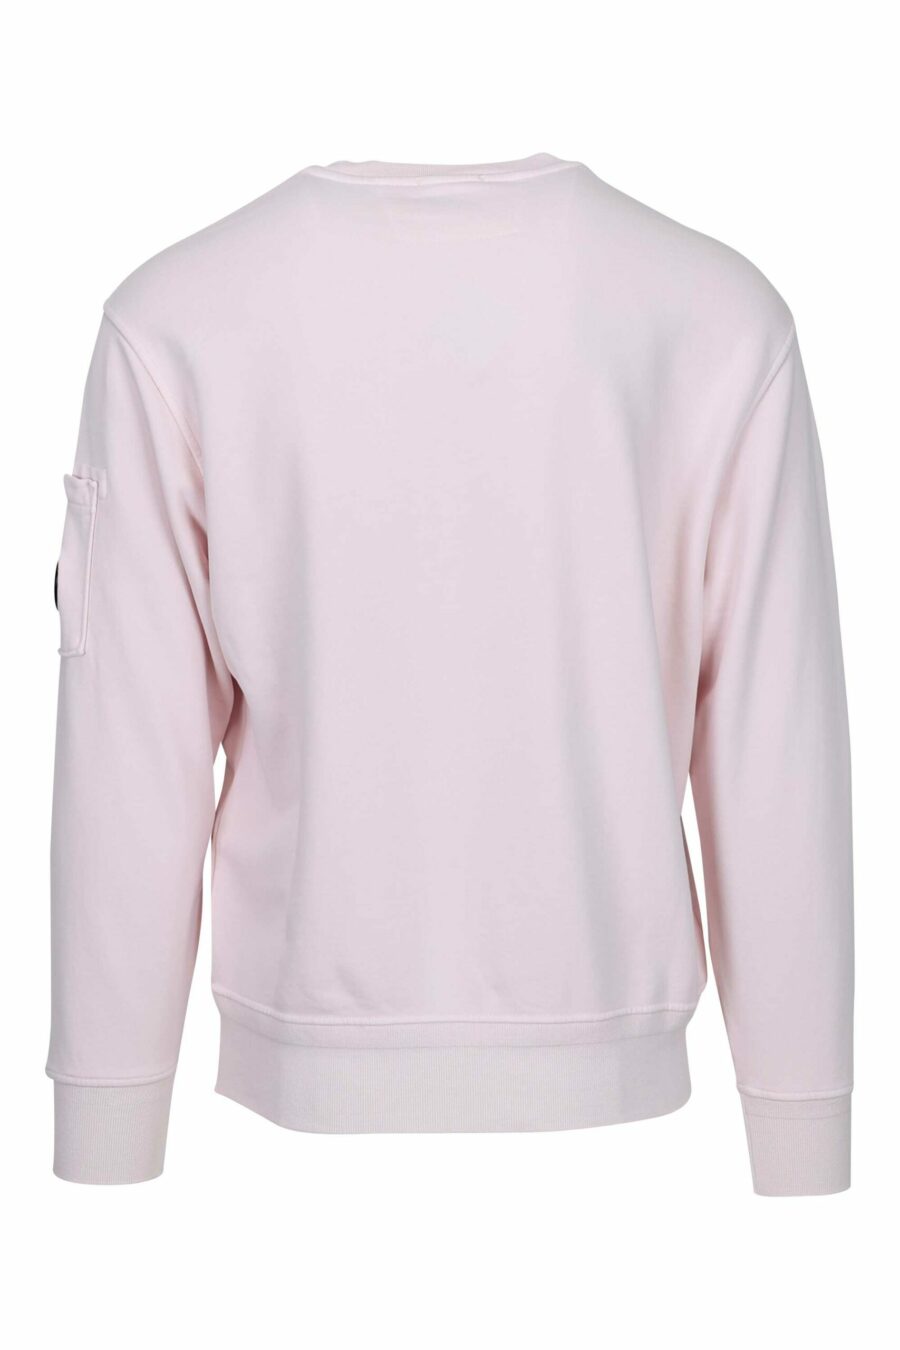 Sweat rose avec poche et lentille mini-logo - 7620943751697 2 scaled